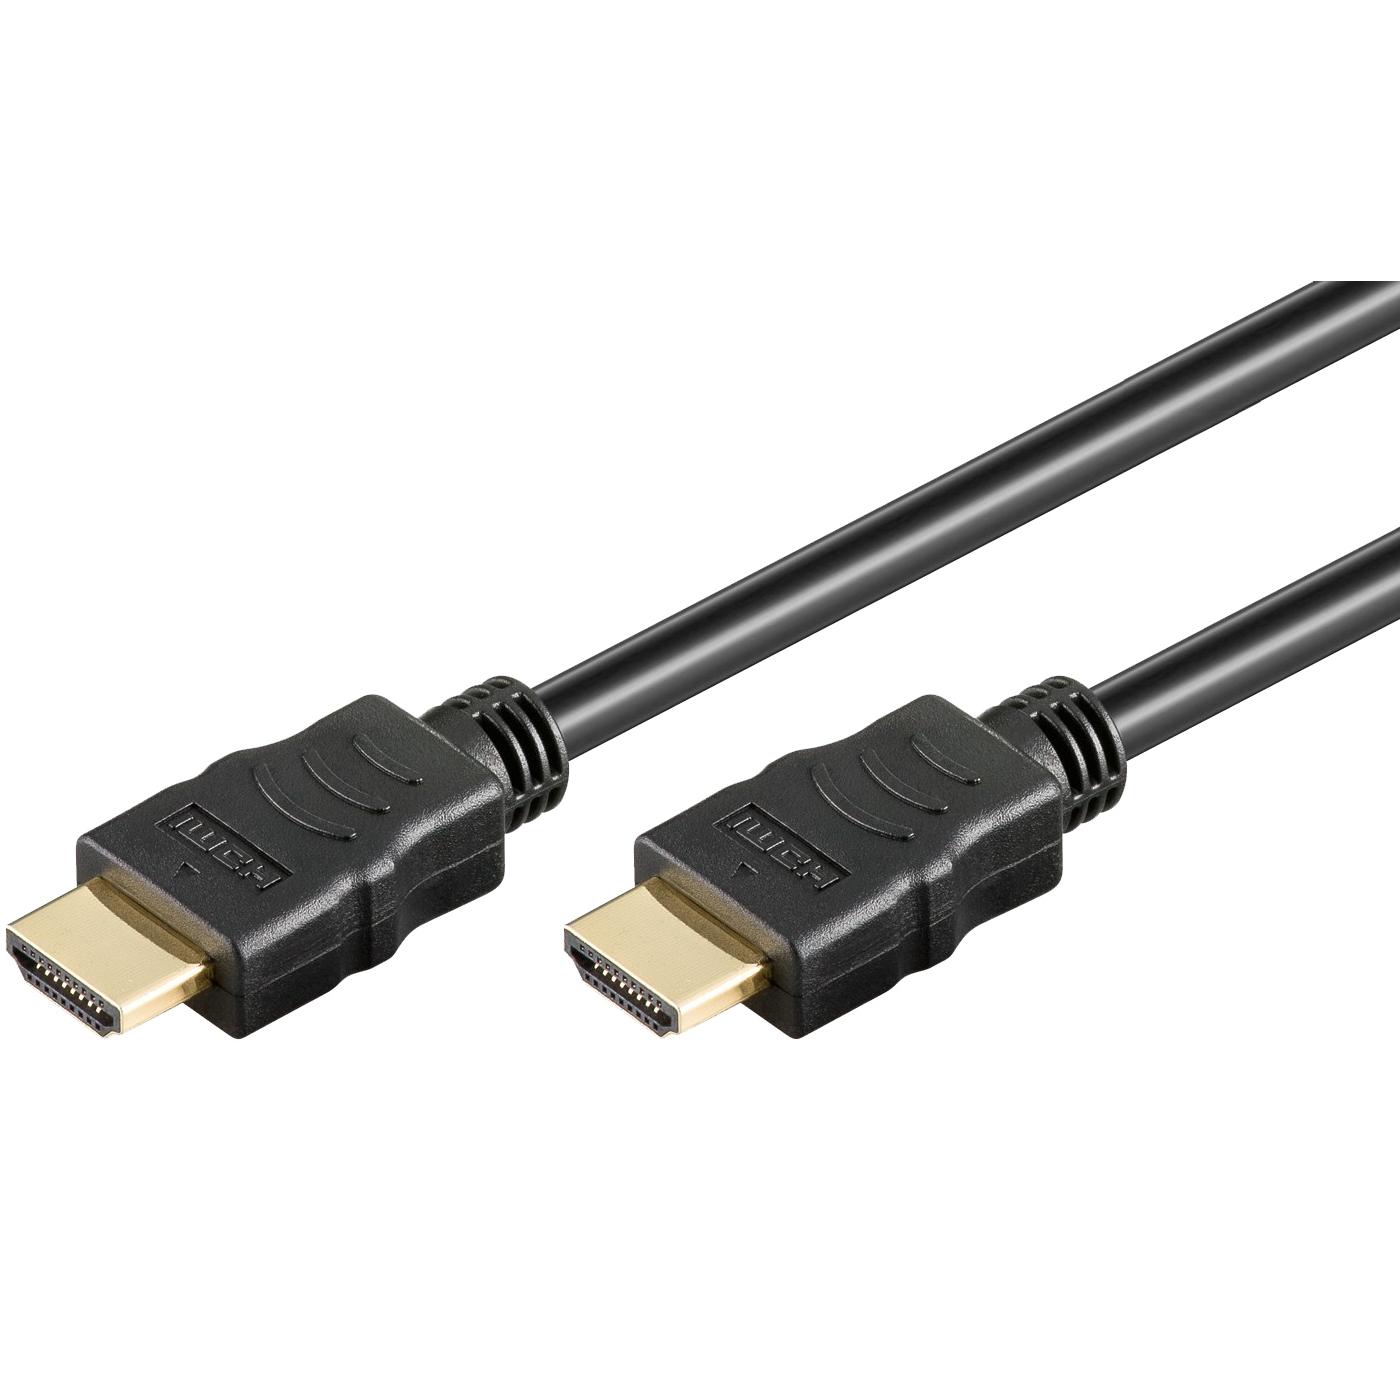 HDMI kabl 1.5 metar, verzija 1.4, bulk